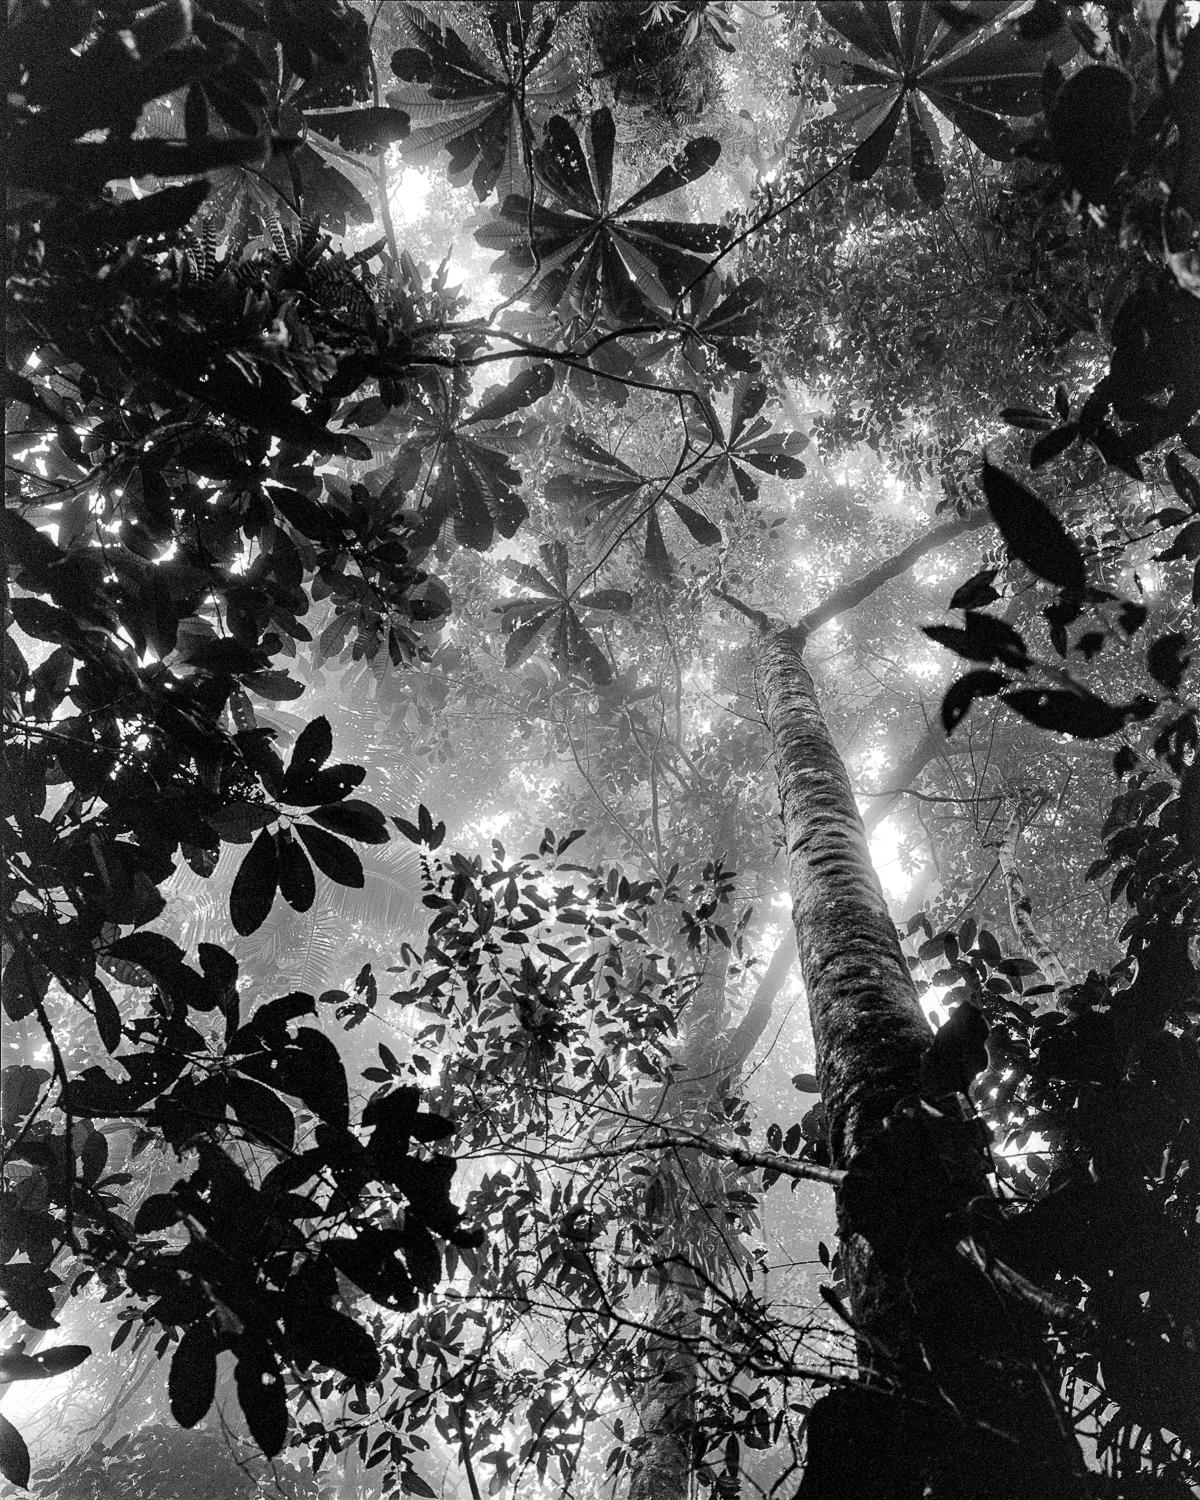 Miguel Winograd  Landscape Photograph - Bosque Tropical Húmedo Nuquí, Silver Gelatin Print